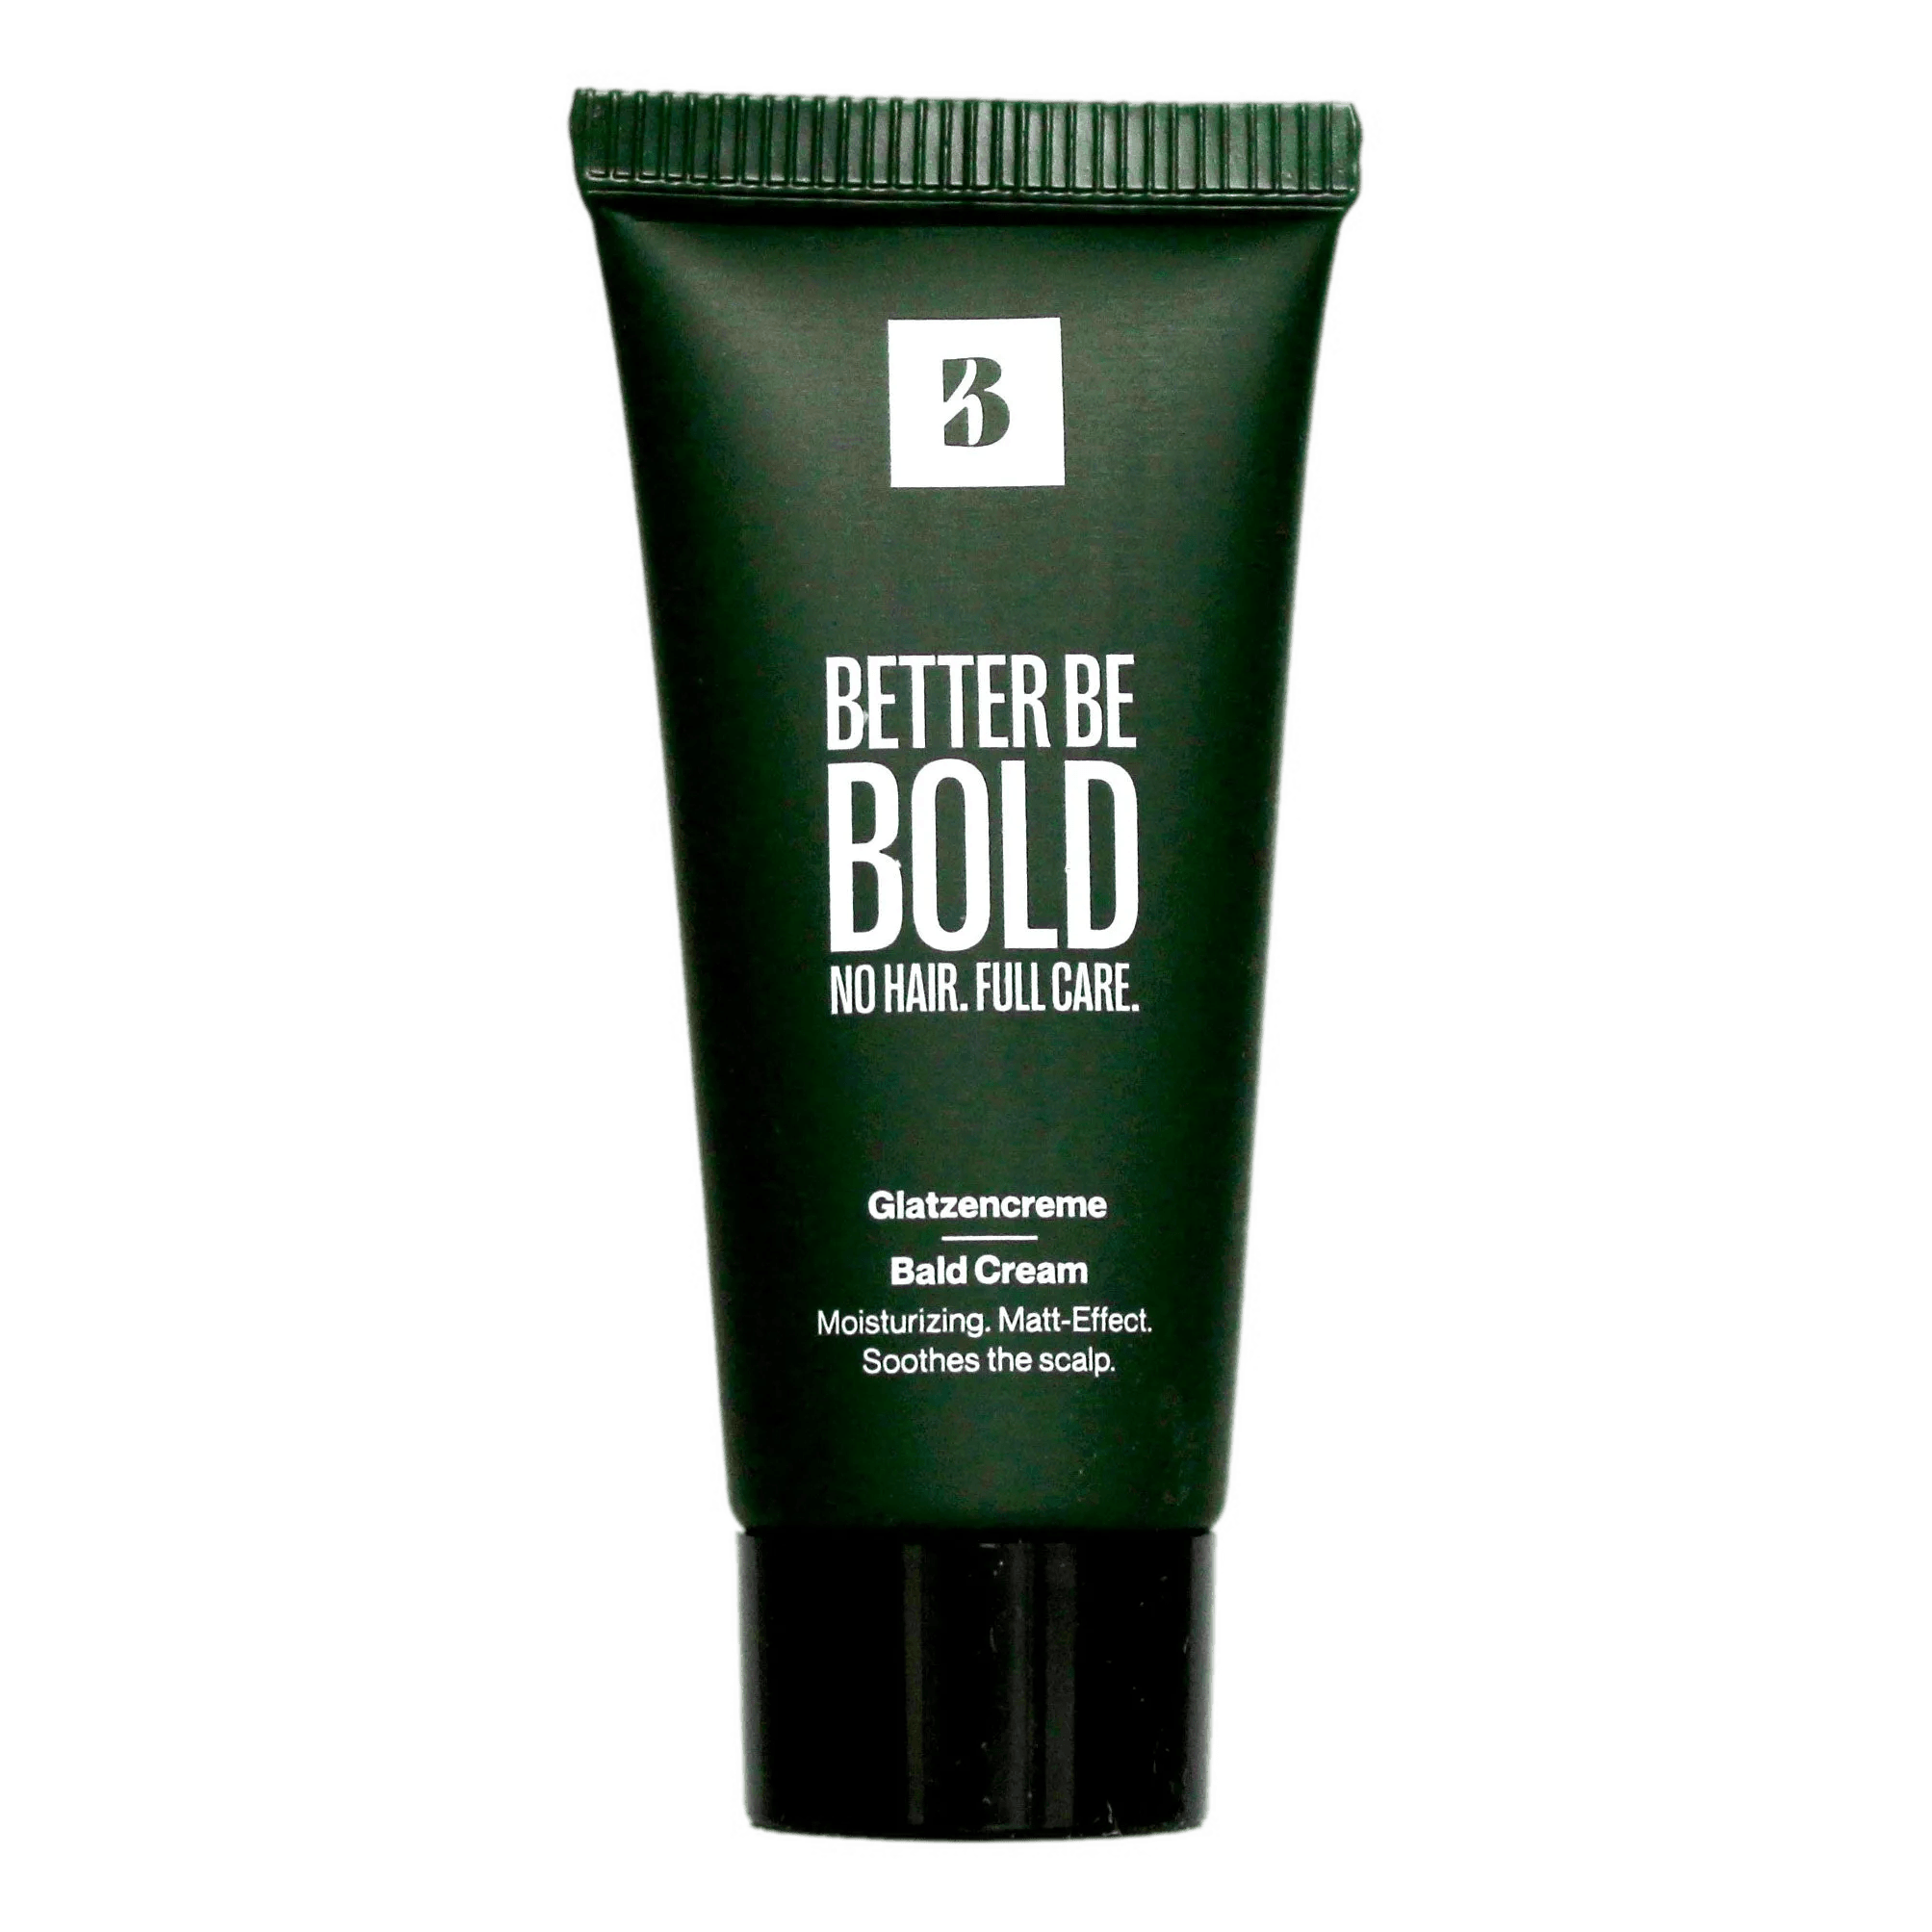 Better Be Bold Bald Cream vareprøve